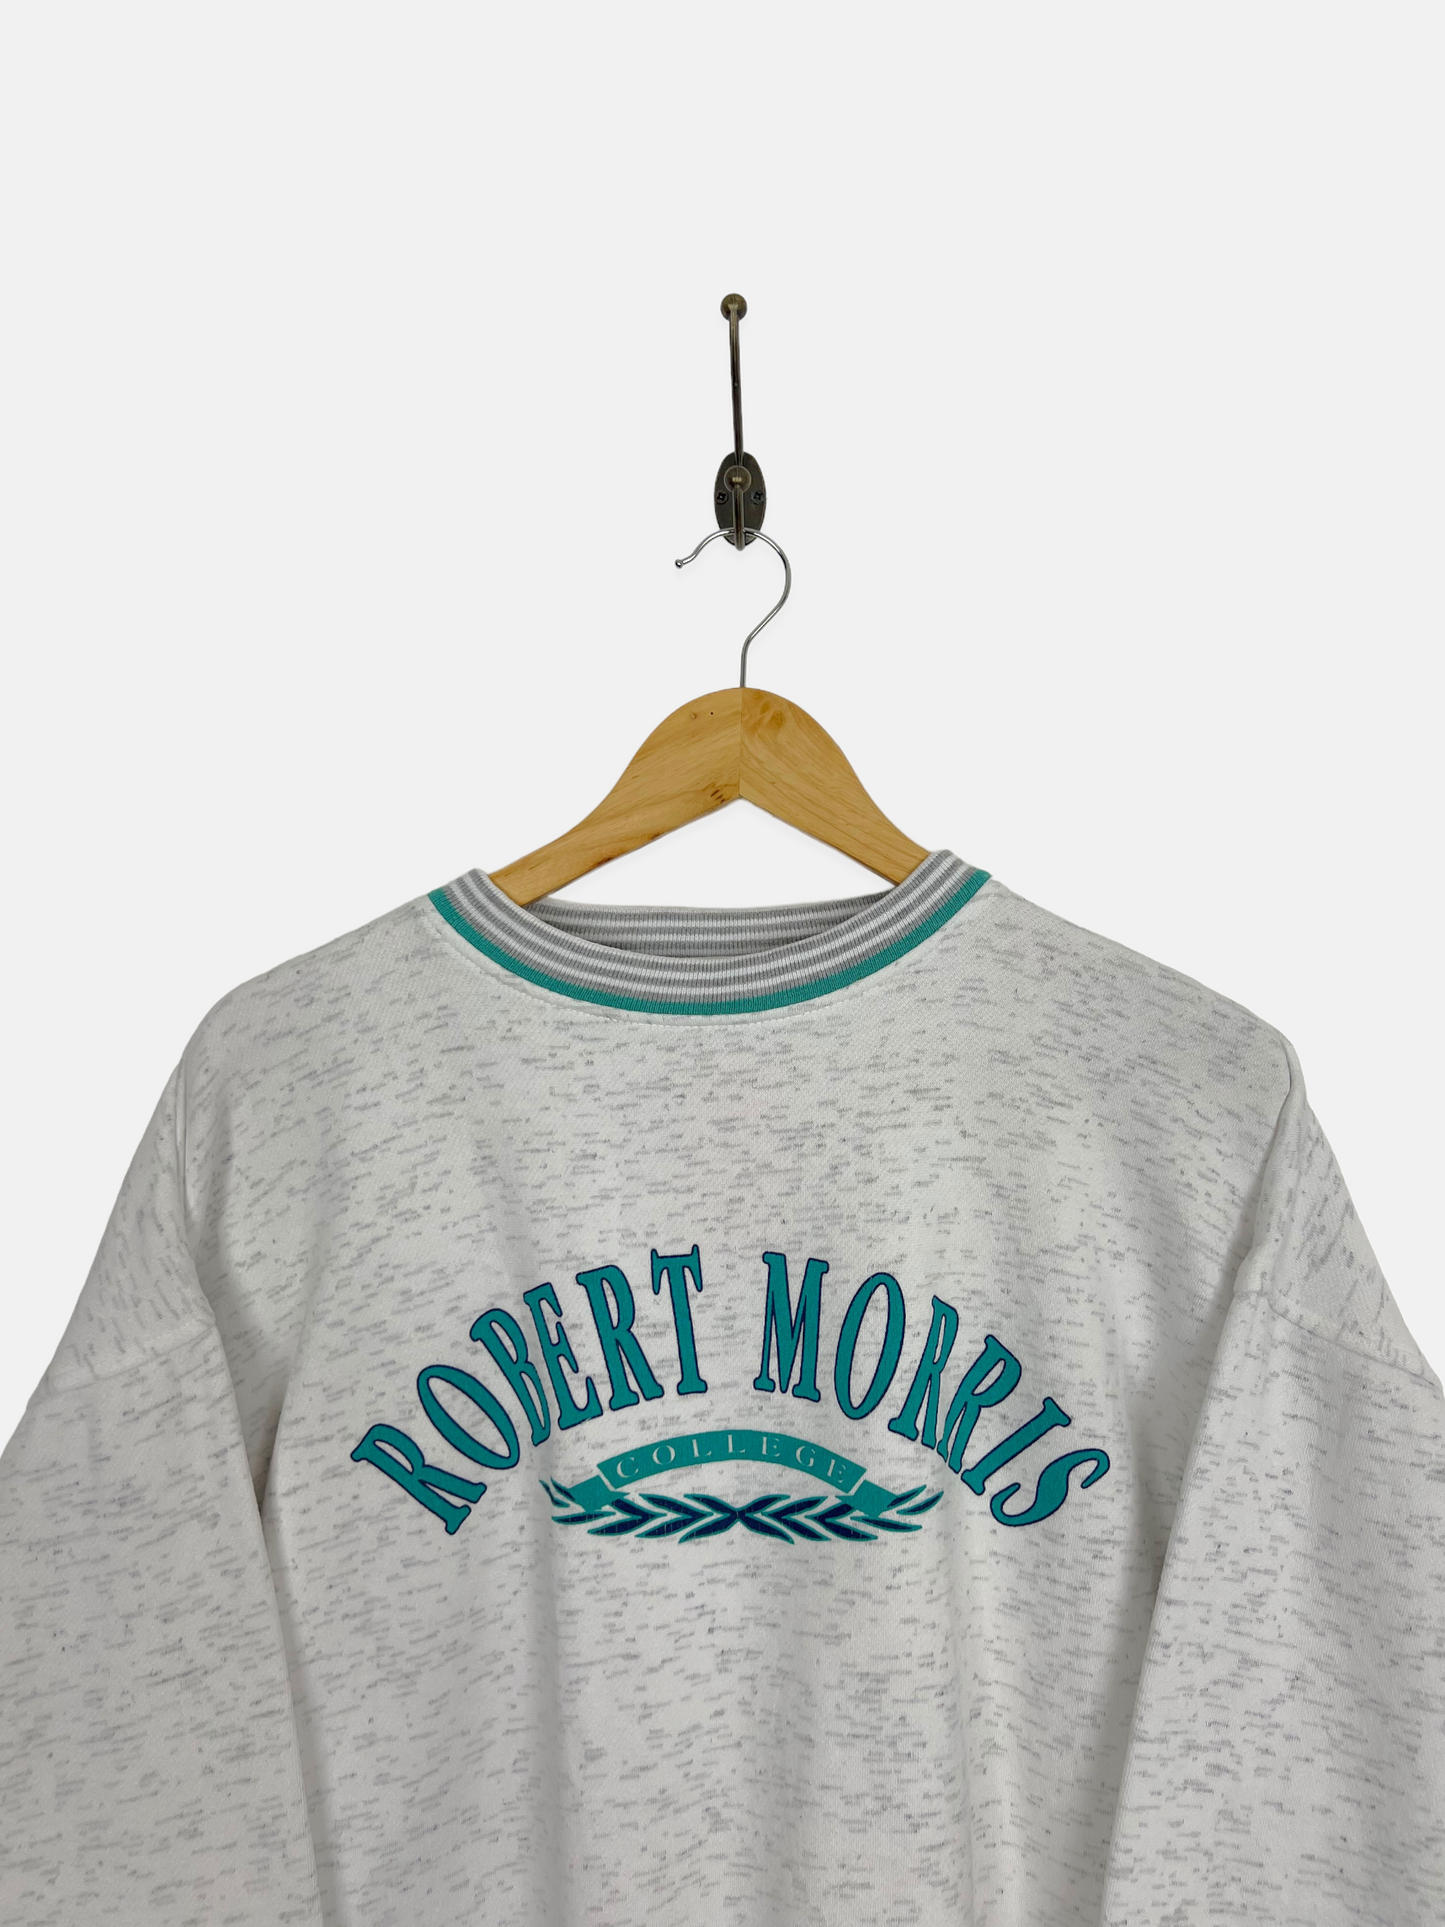 90's Robert Morris College Vintage Sweatshirt Size M